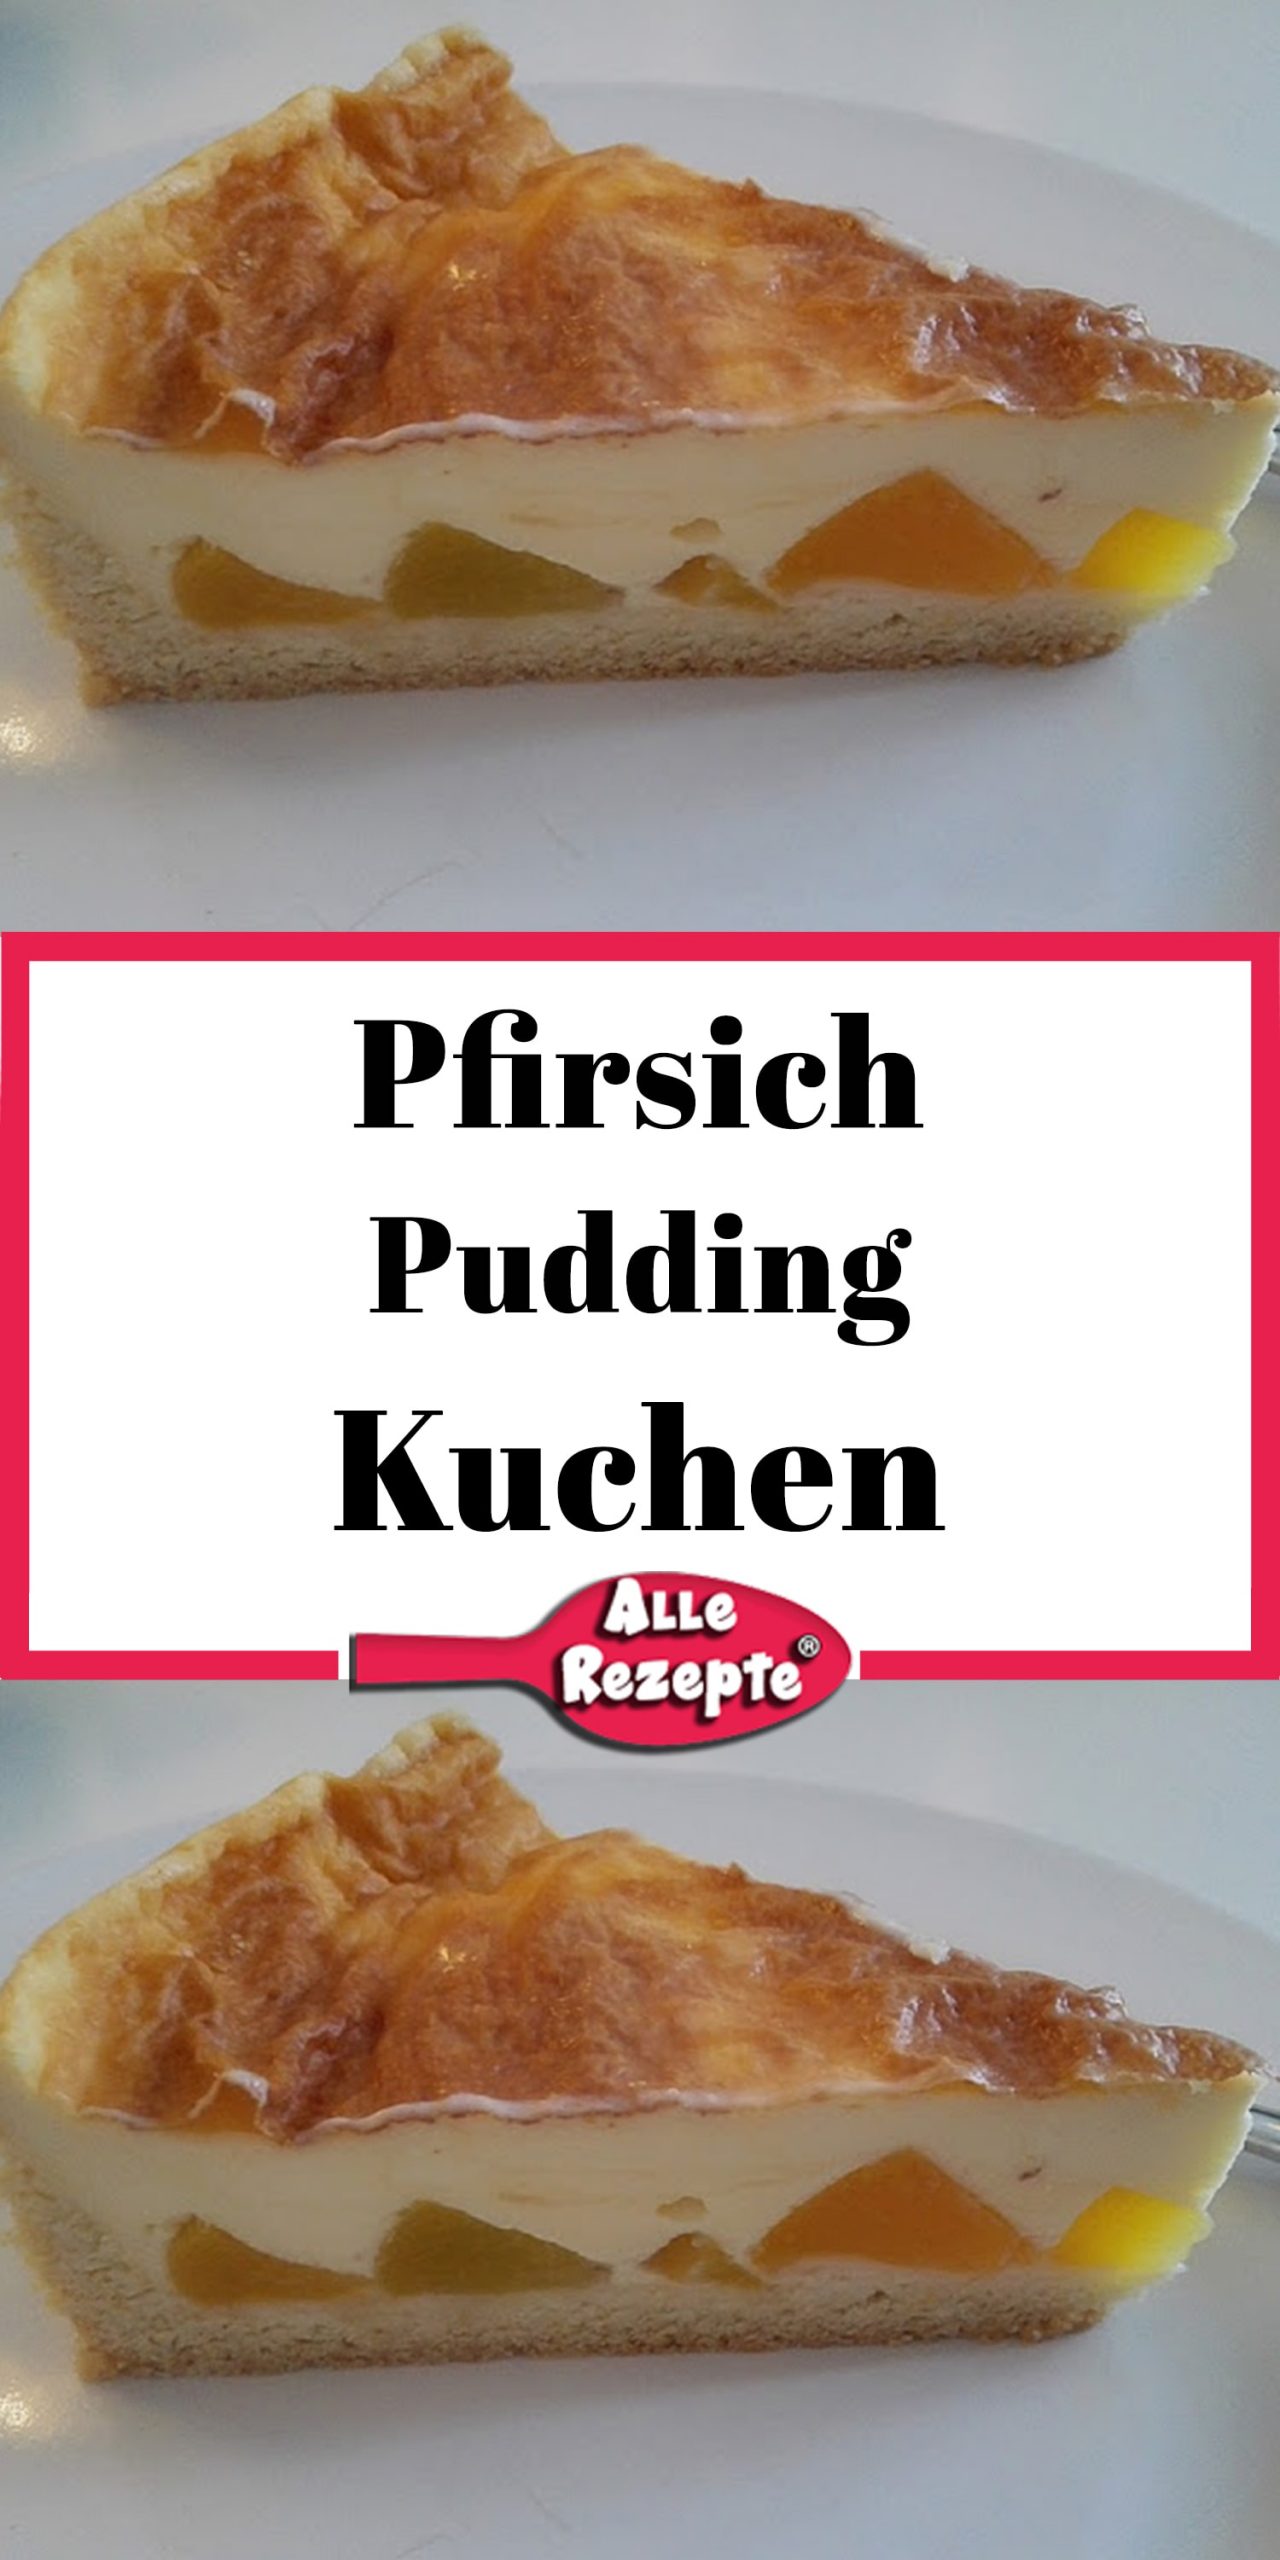 Pfirsich Pudding Kuchen - Alle Rezepte